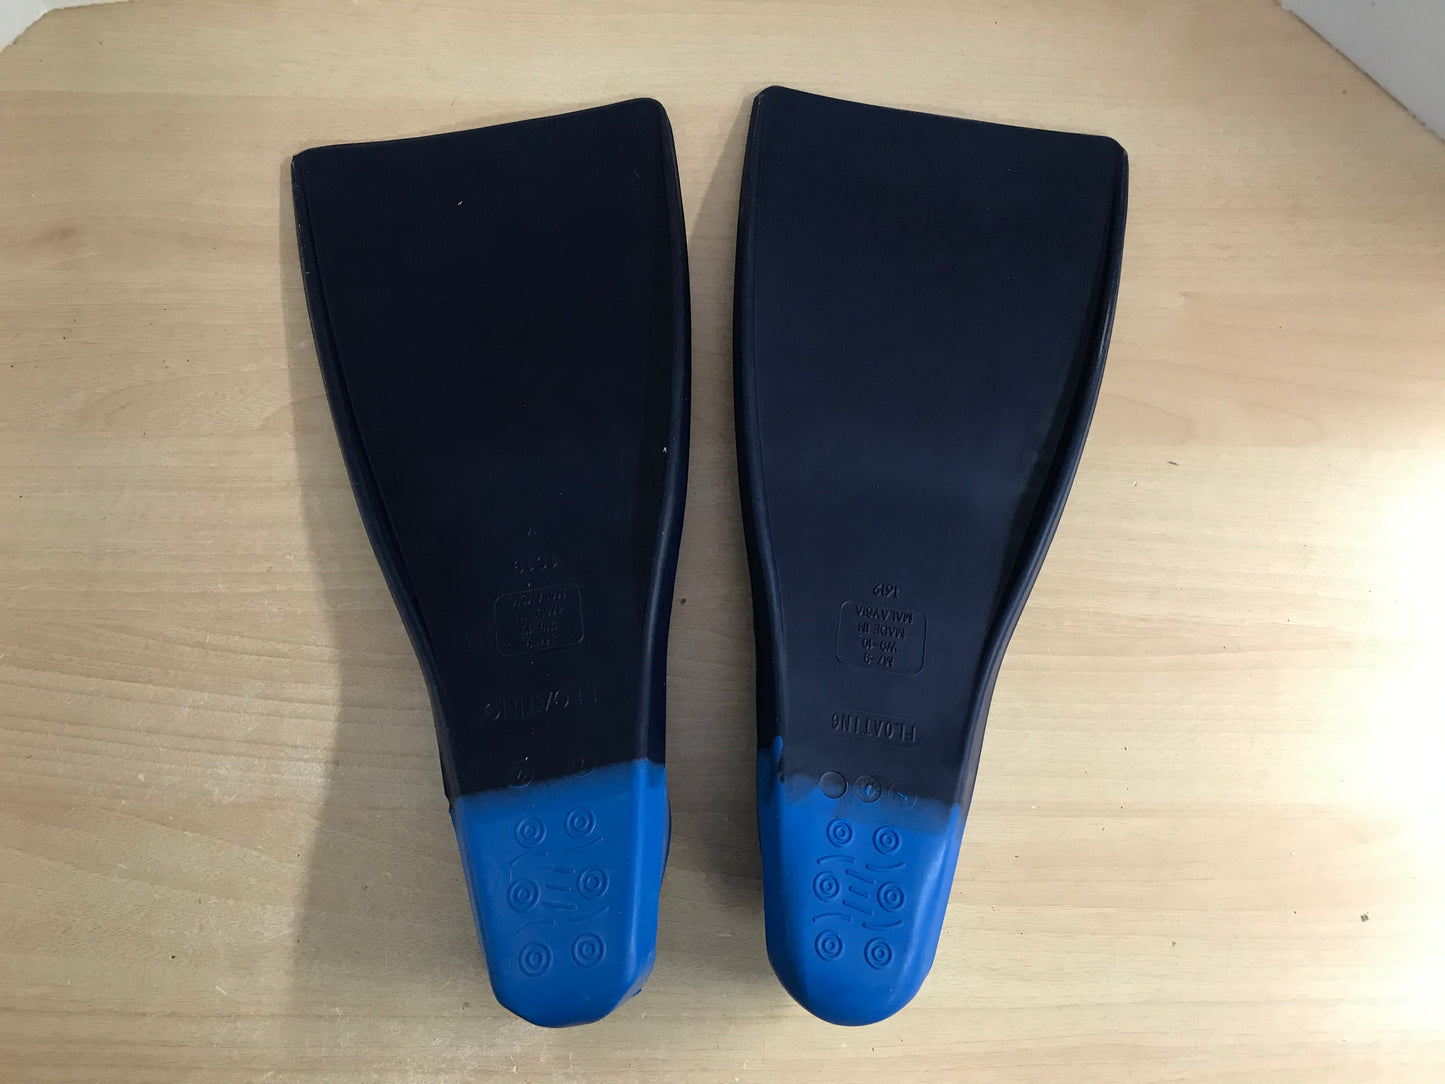 Snorkel Dive Fins Ladies Size 9-10 Shoe Sporti Blue Excellent